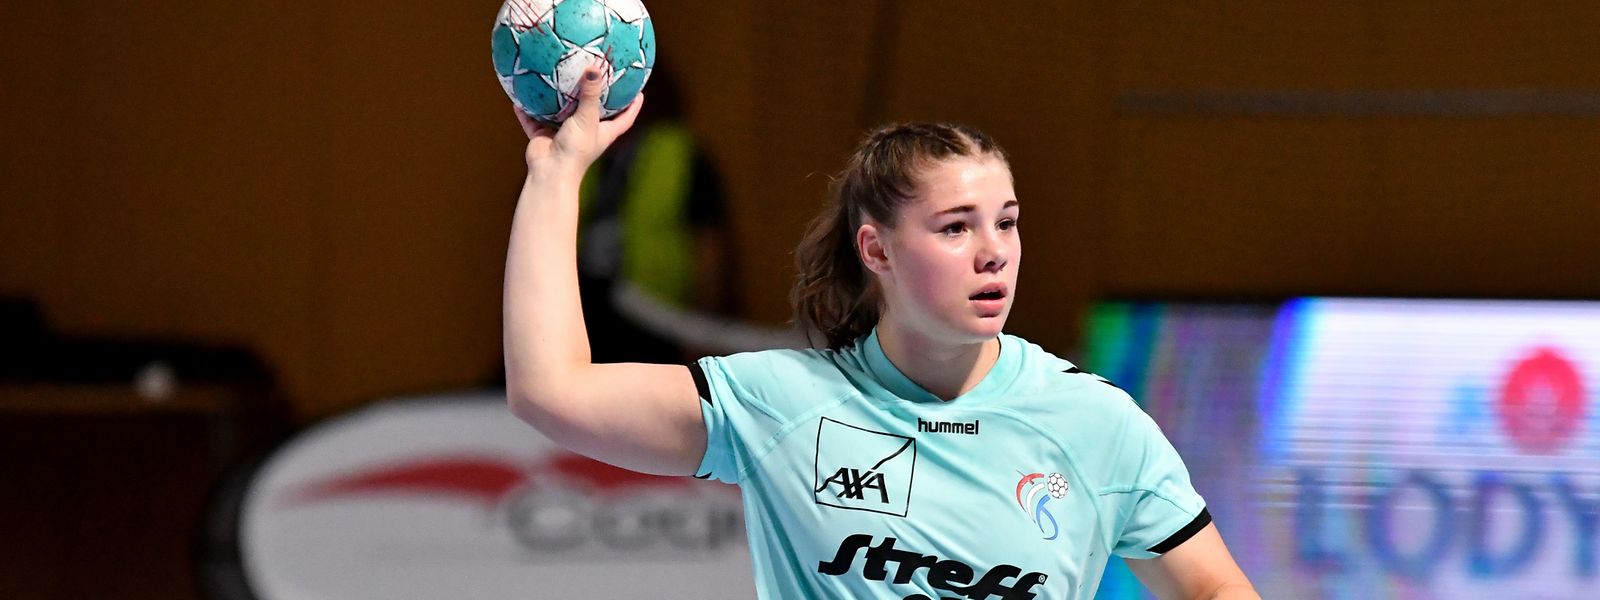 Lily Melchior erzielte den ersten Treffer für die Luxemburger Frauen.